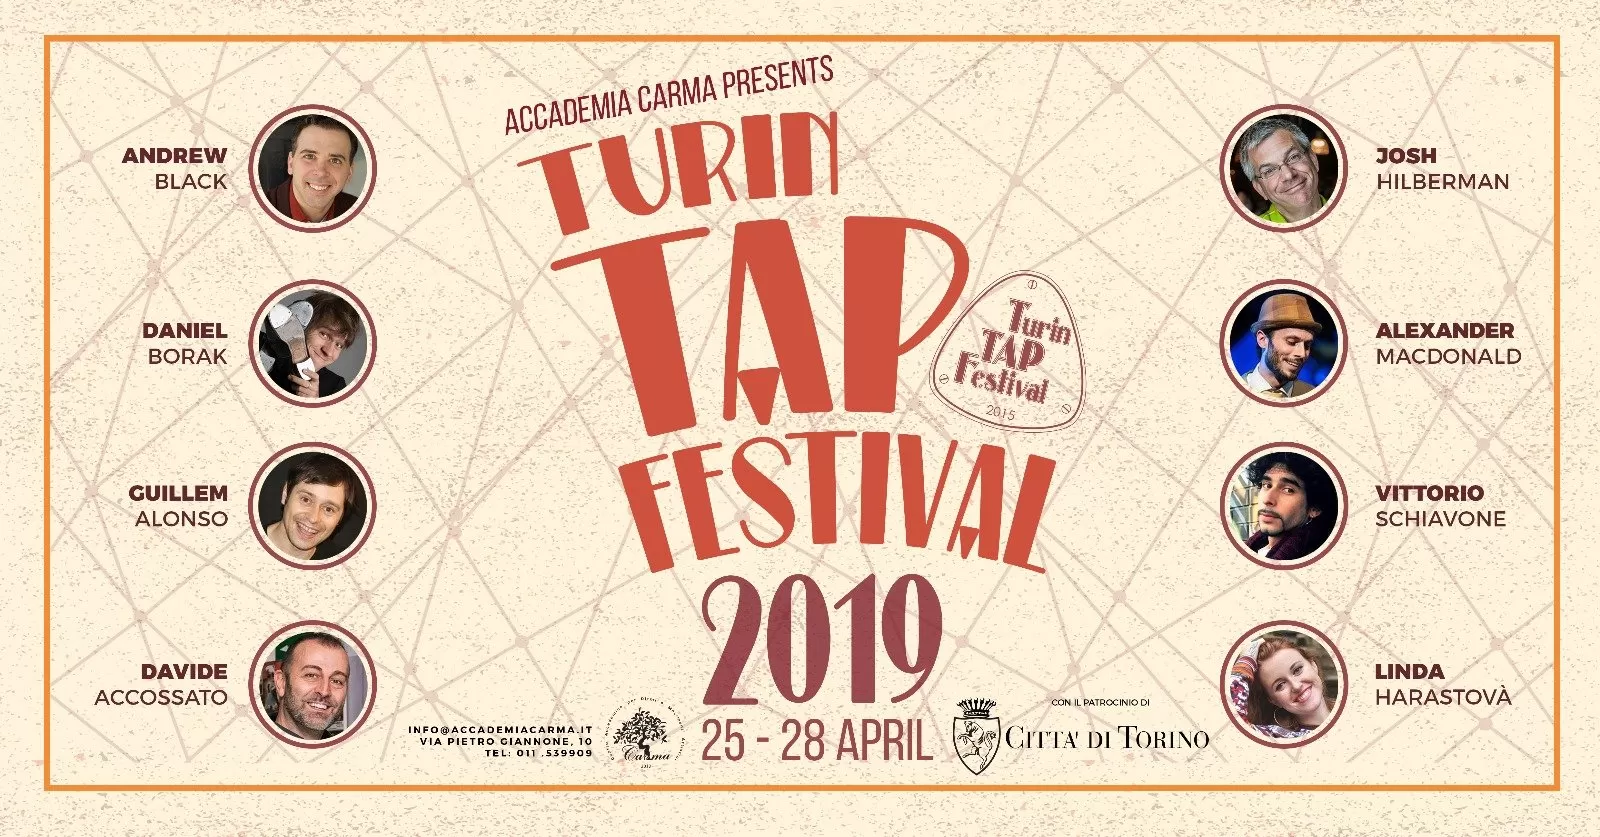 Turin Tap Festival 2019, il ritorno del Tip Tap